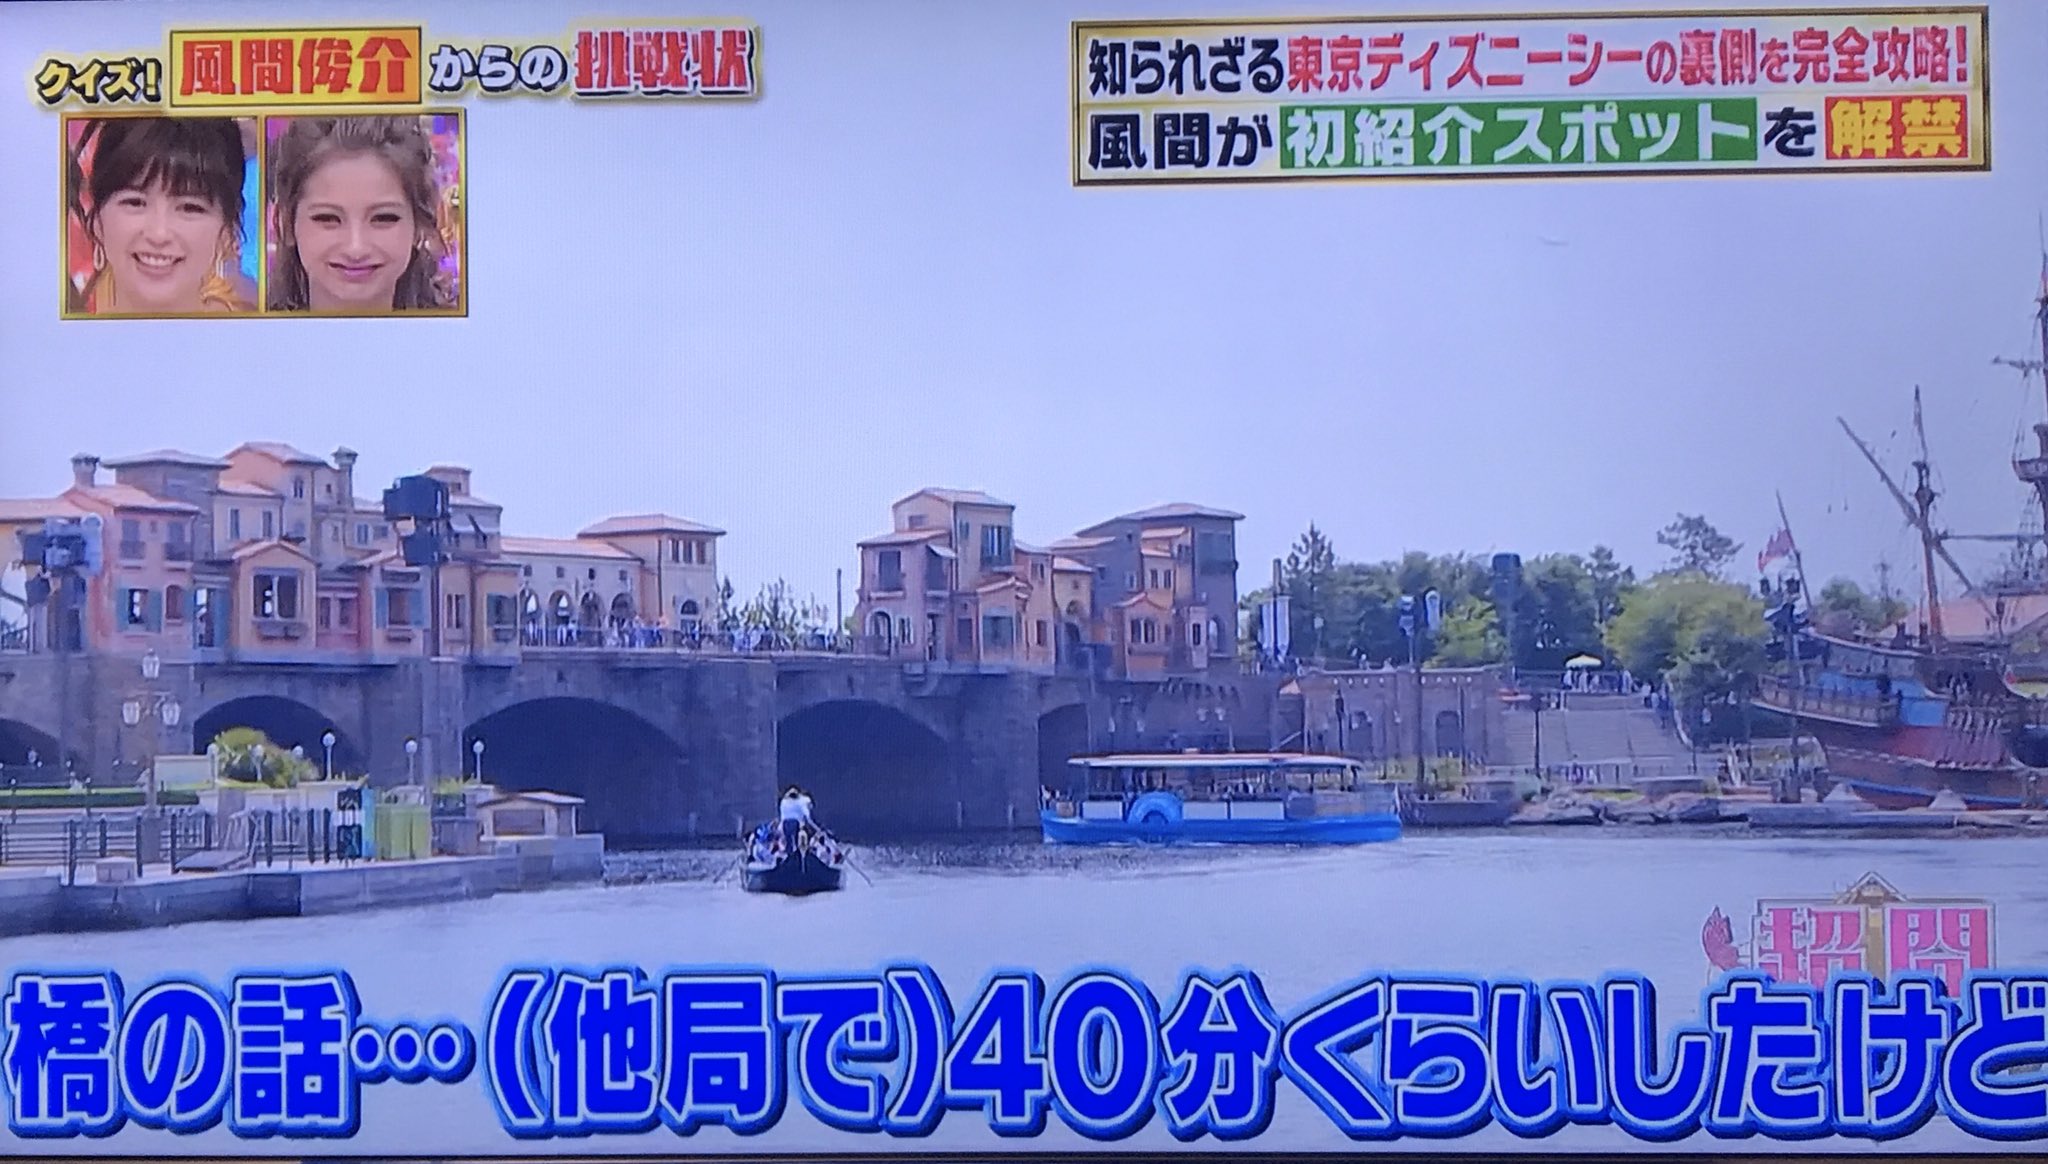 マツコの知らない世界 10 11 火 よる8時57分 ラーメンメンマの世界 このあと 8時57分 東京ディズニーリゾートの世界 を放送 まだまだあった シンデレラ城の秘密 ディズニーシーにかかる28個の橋の秘密 知れば知るほど奥深い スゴイ その